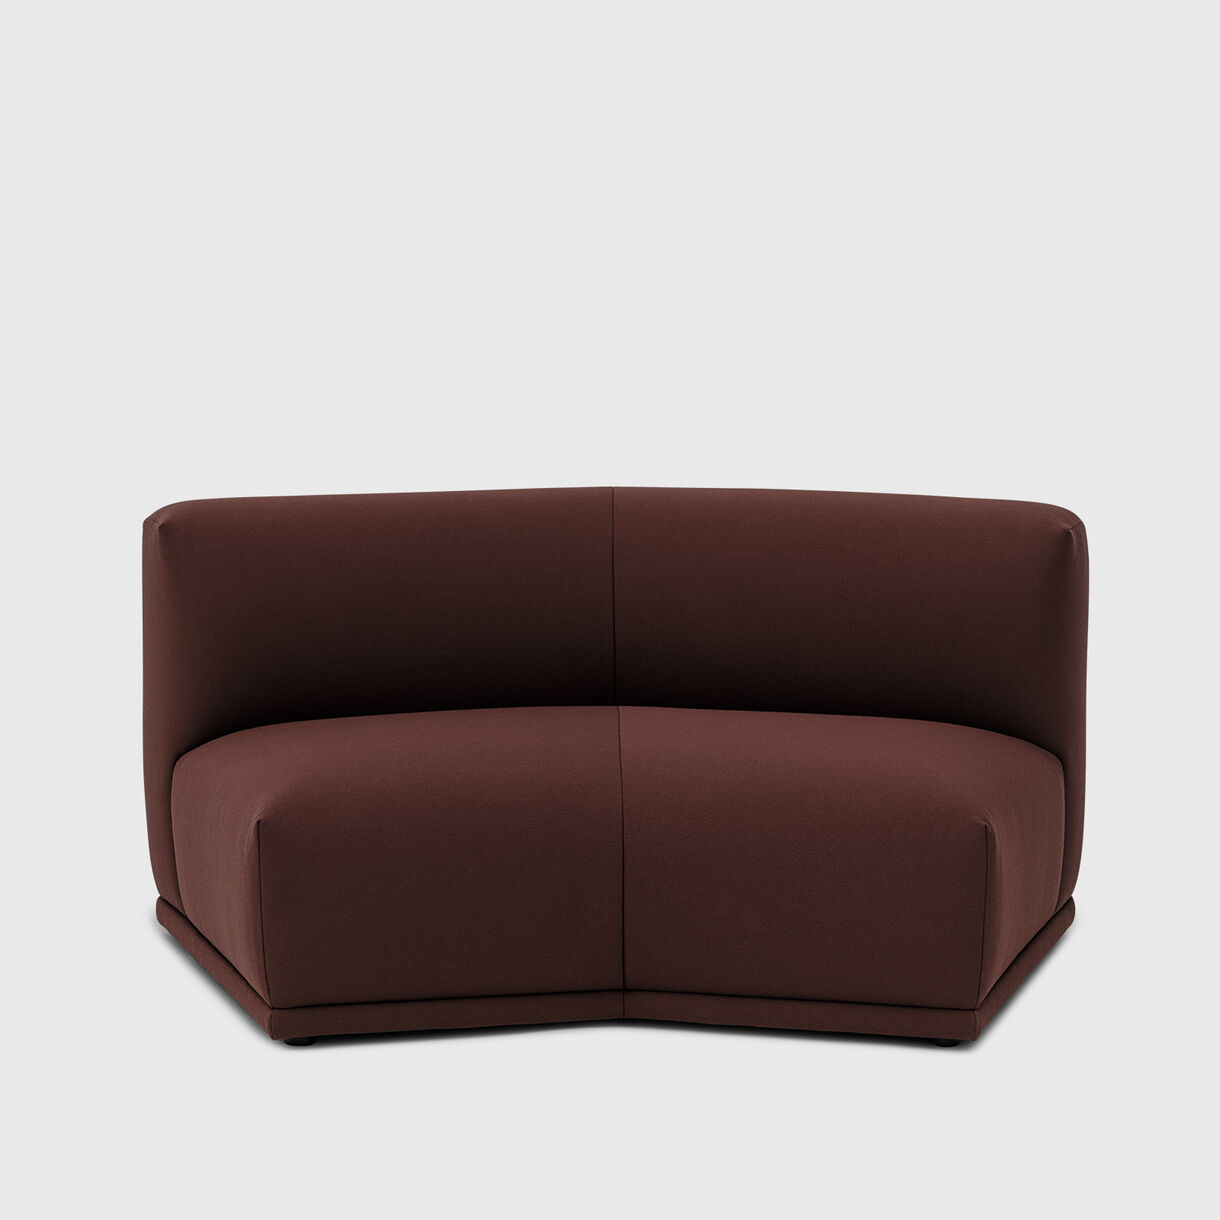 Connect Modular Sofa, 150 degree angle